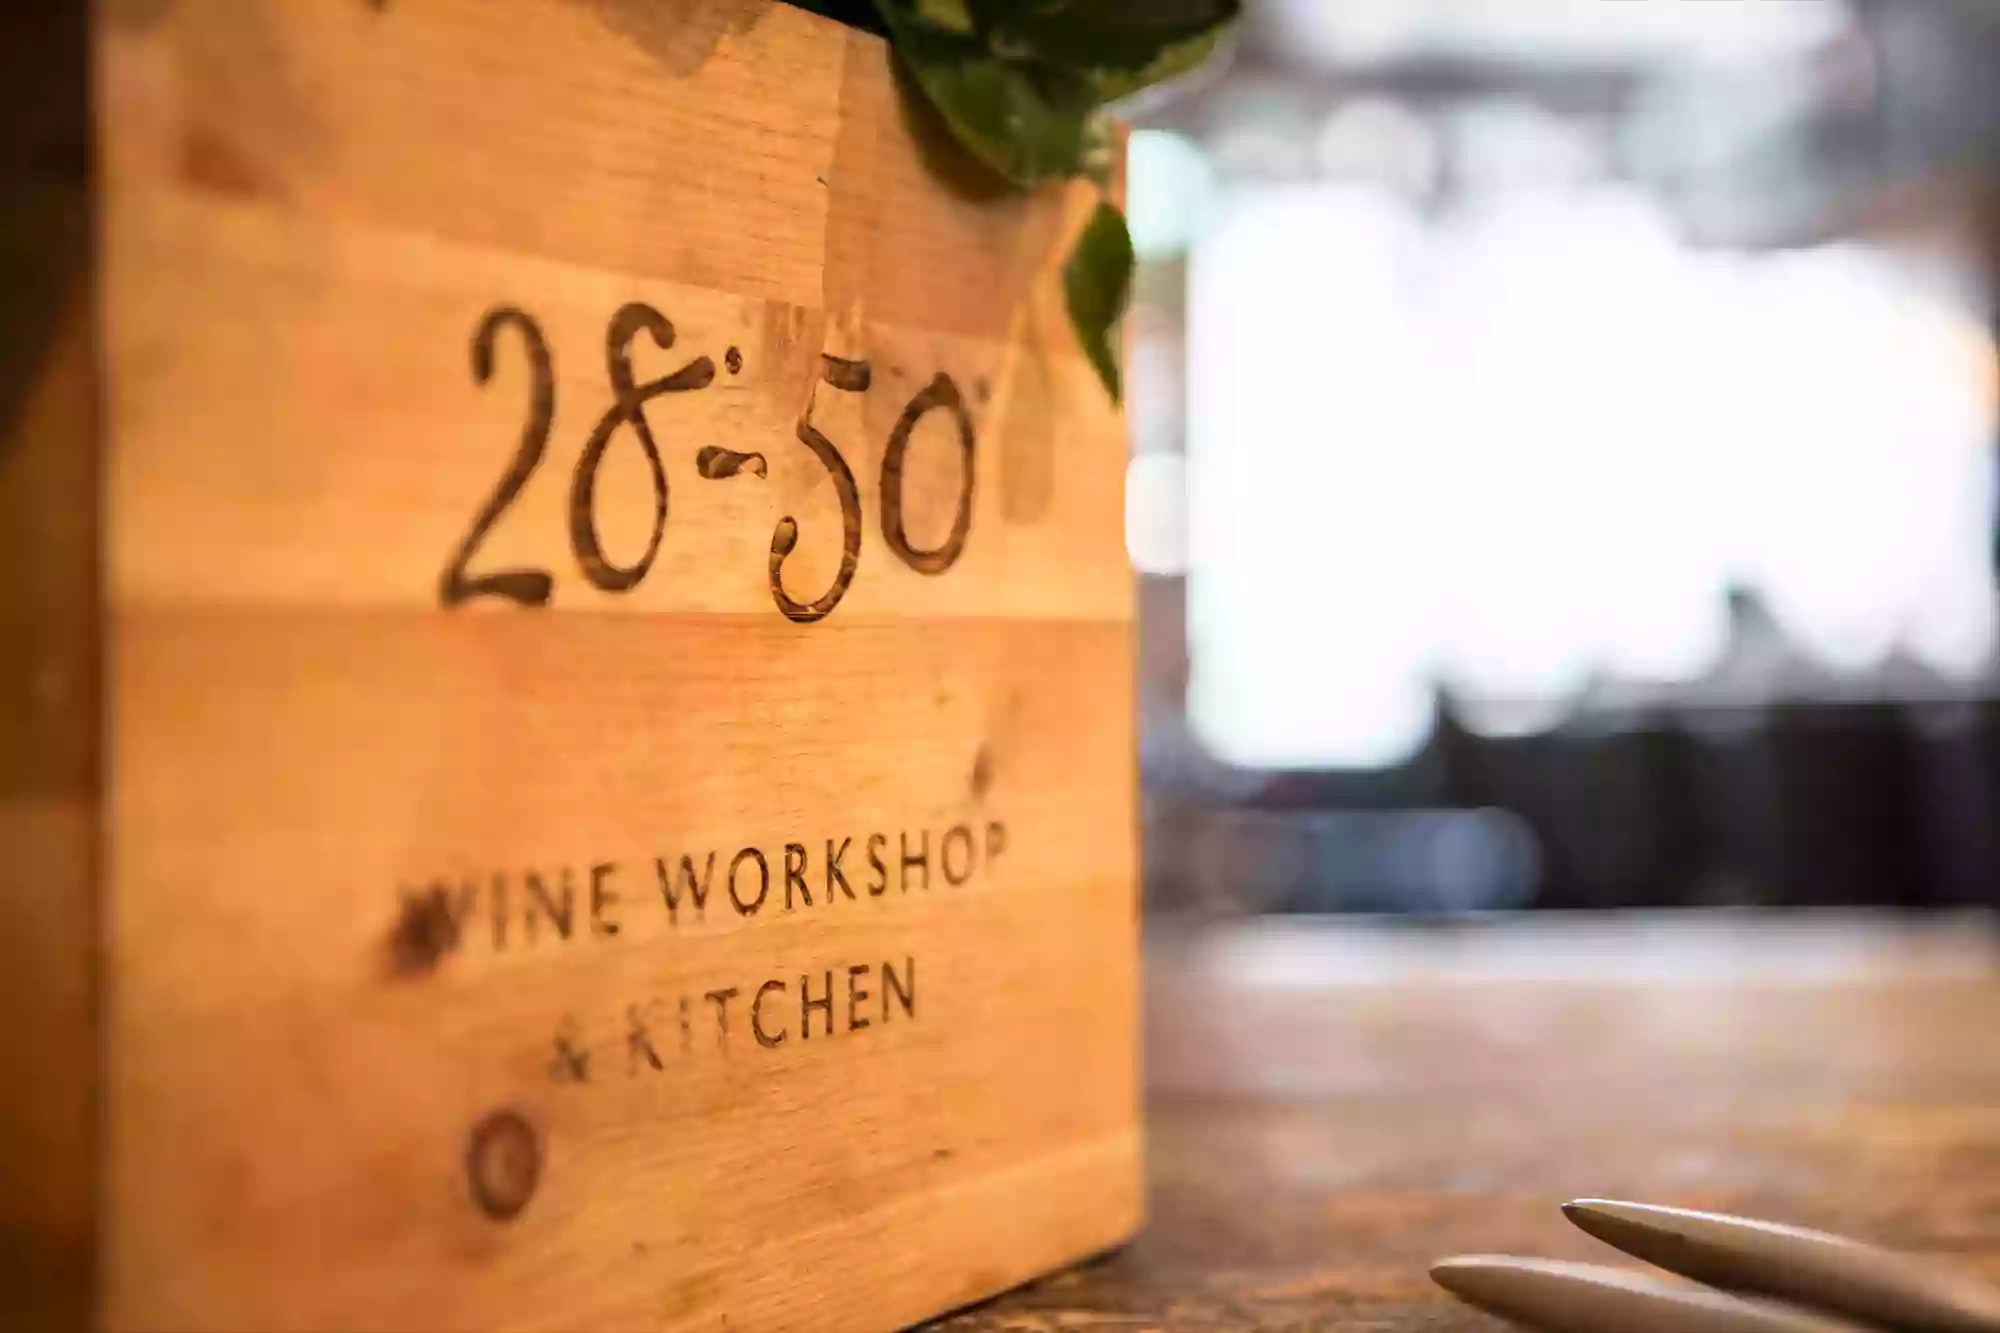 28-50 Wine Workshop & Kitchen